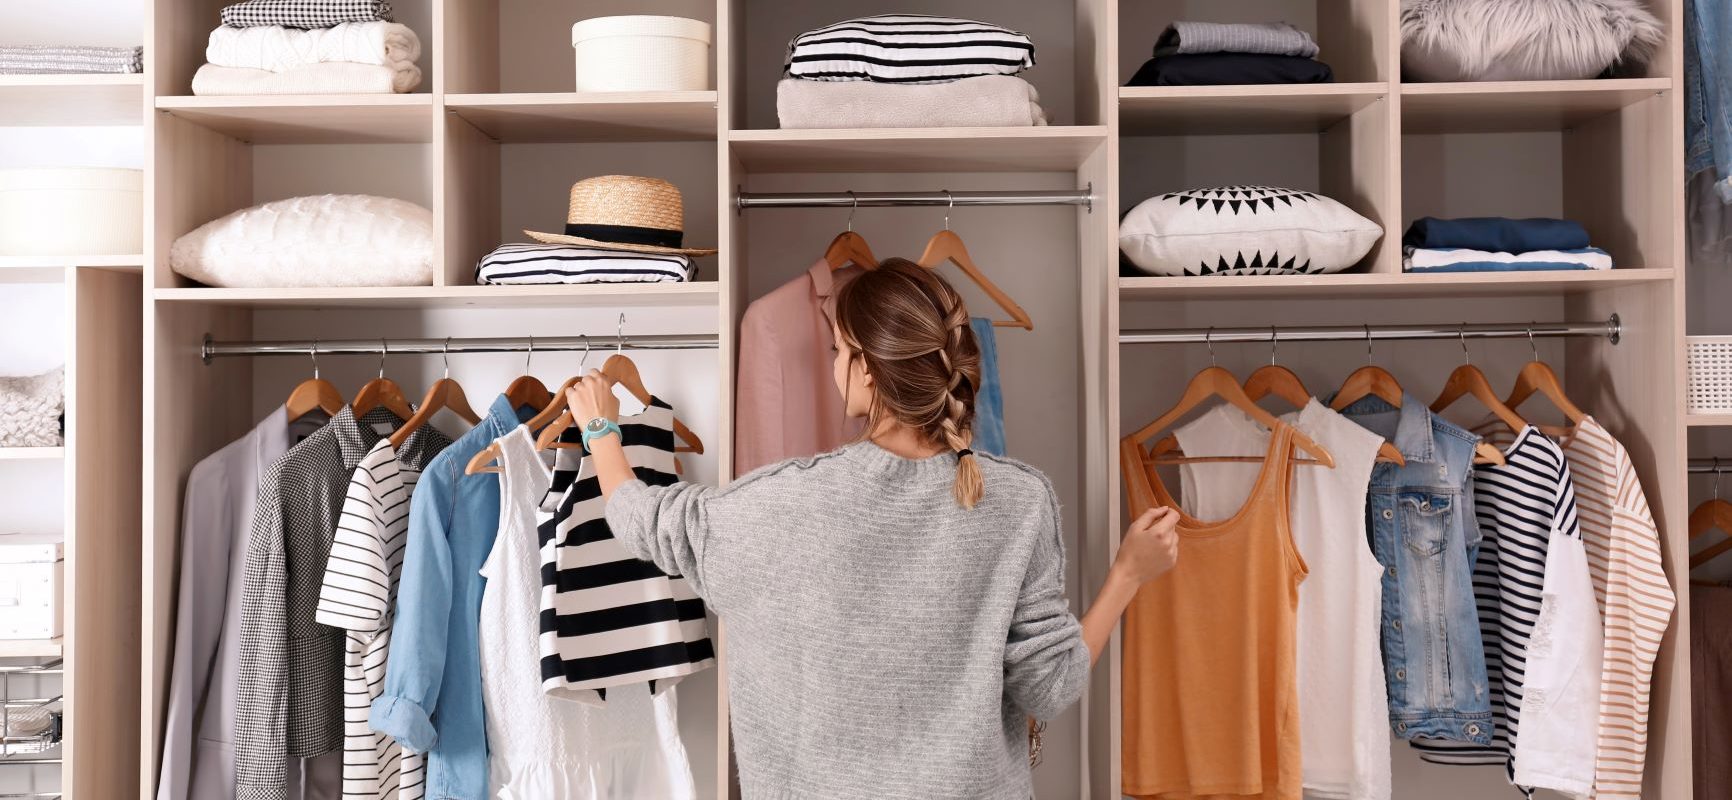 Minimalizm w szafie - jak go osiągnąć? Kobieta stoi przed swoją szafą, w której ma poukładane ubrania.